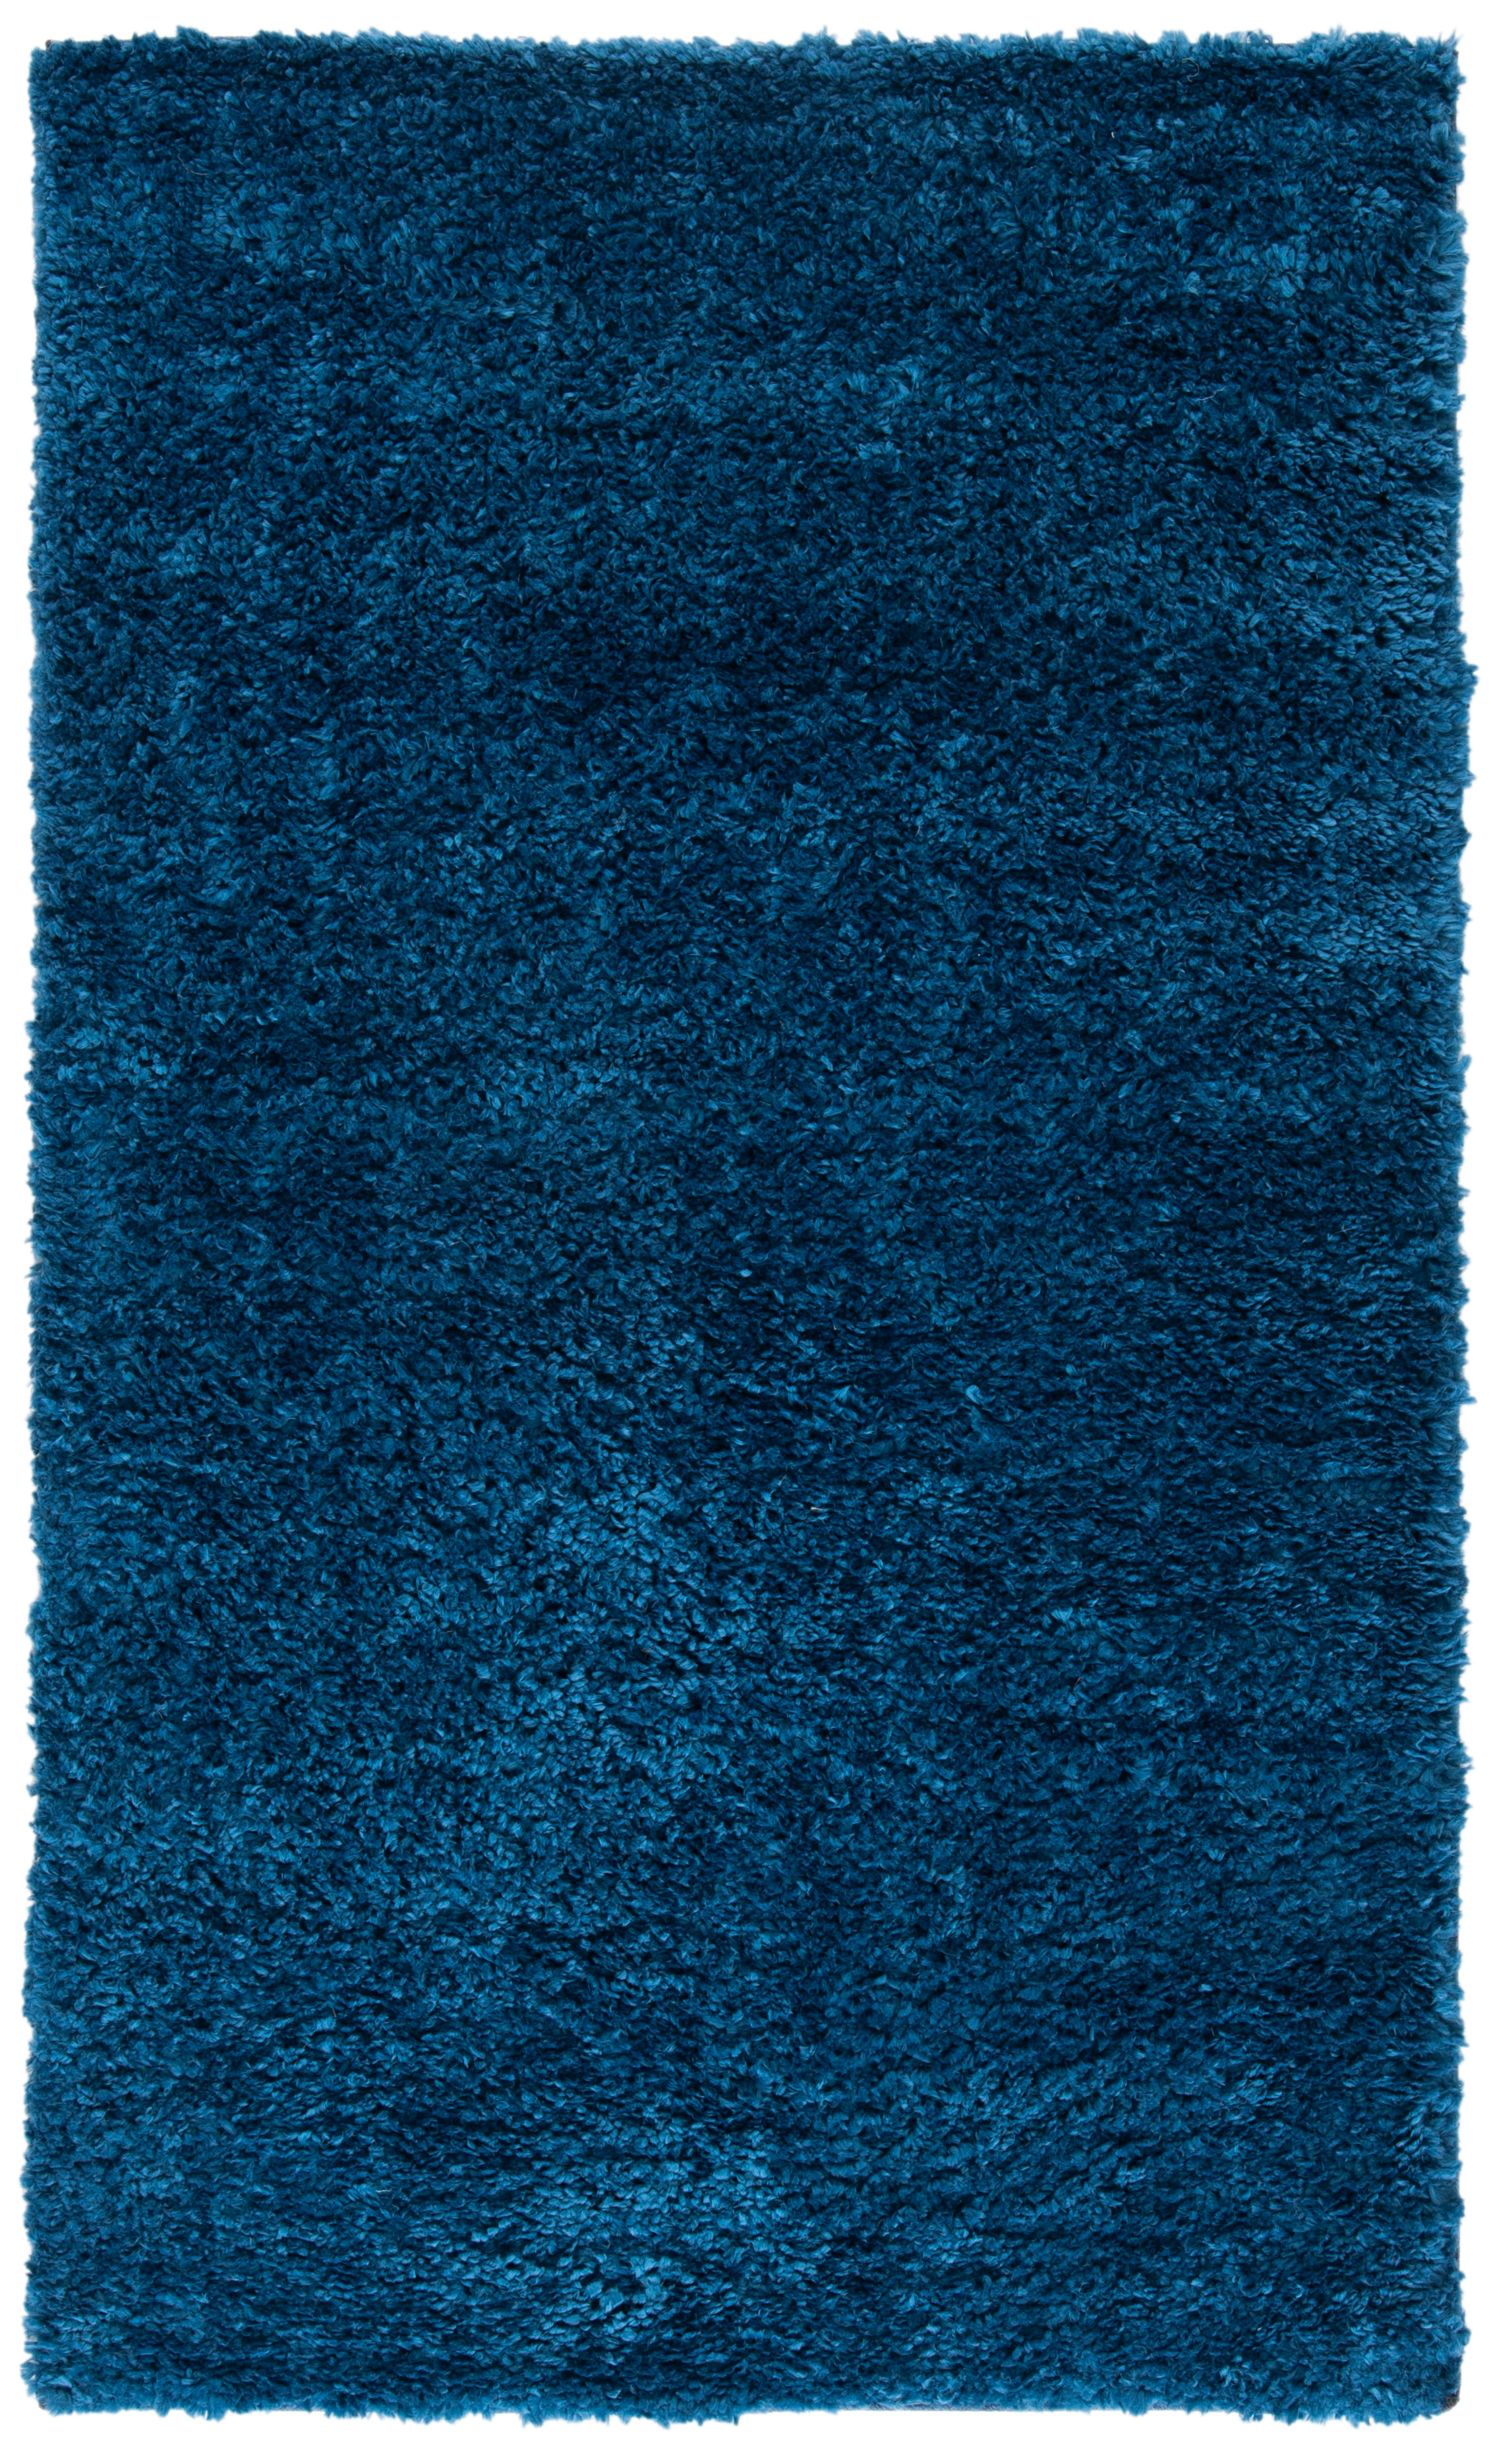 Tapis de salon interieur en bleu marine, 91 x 152 cm